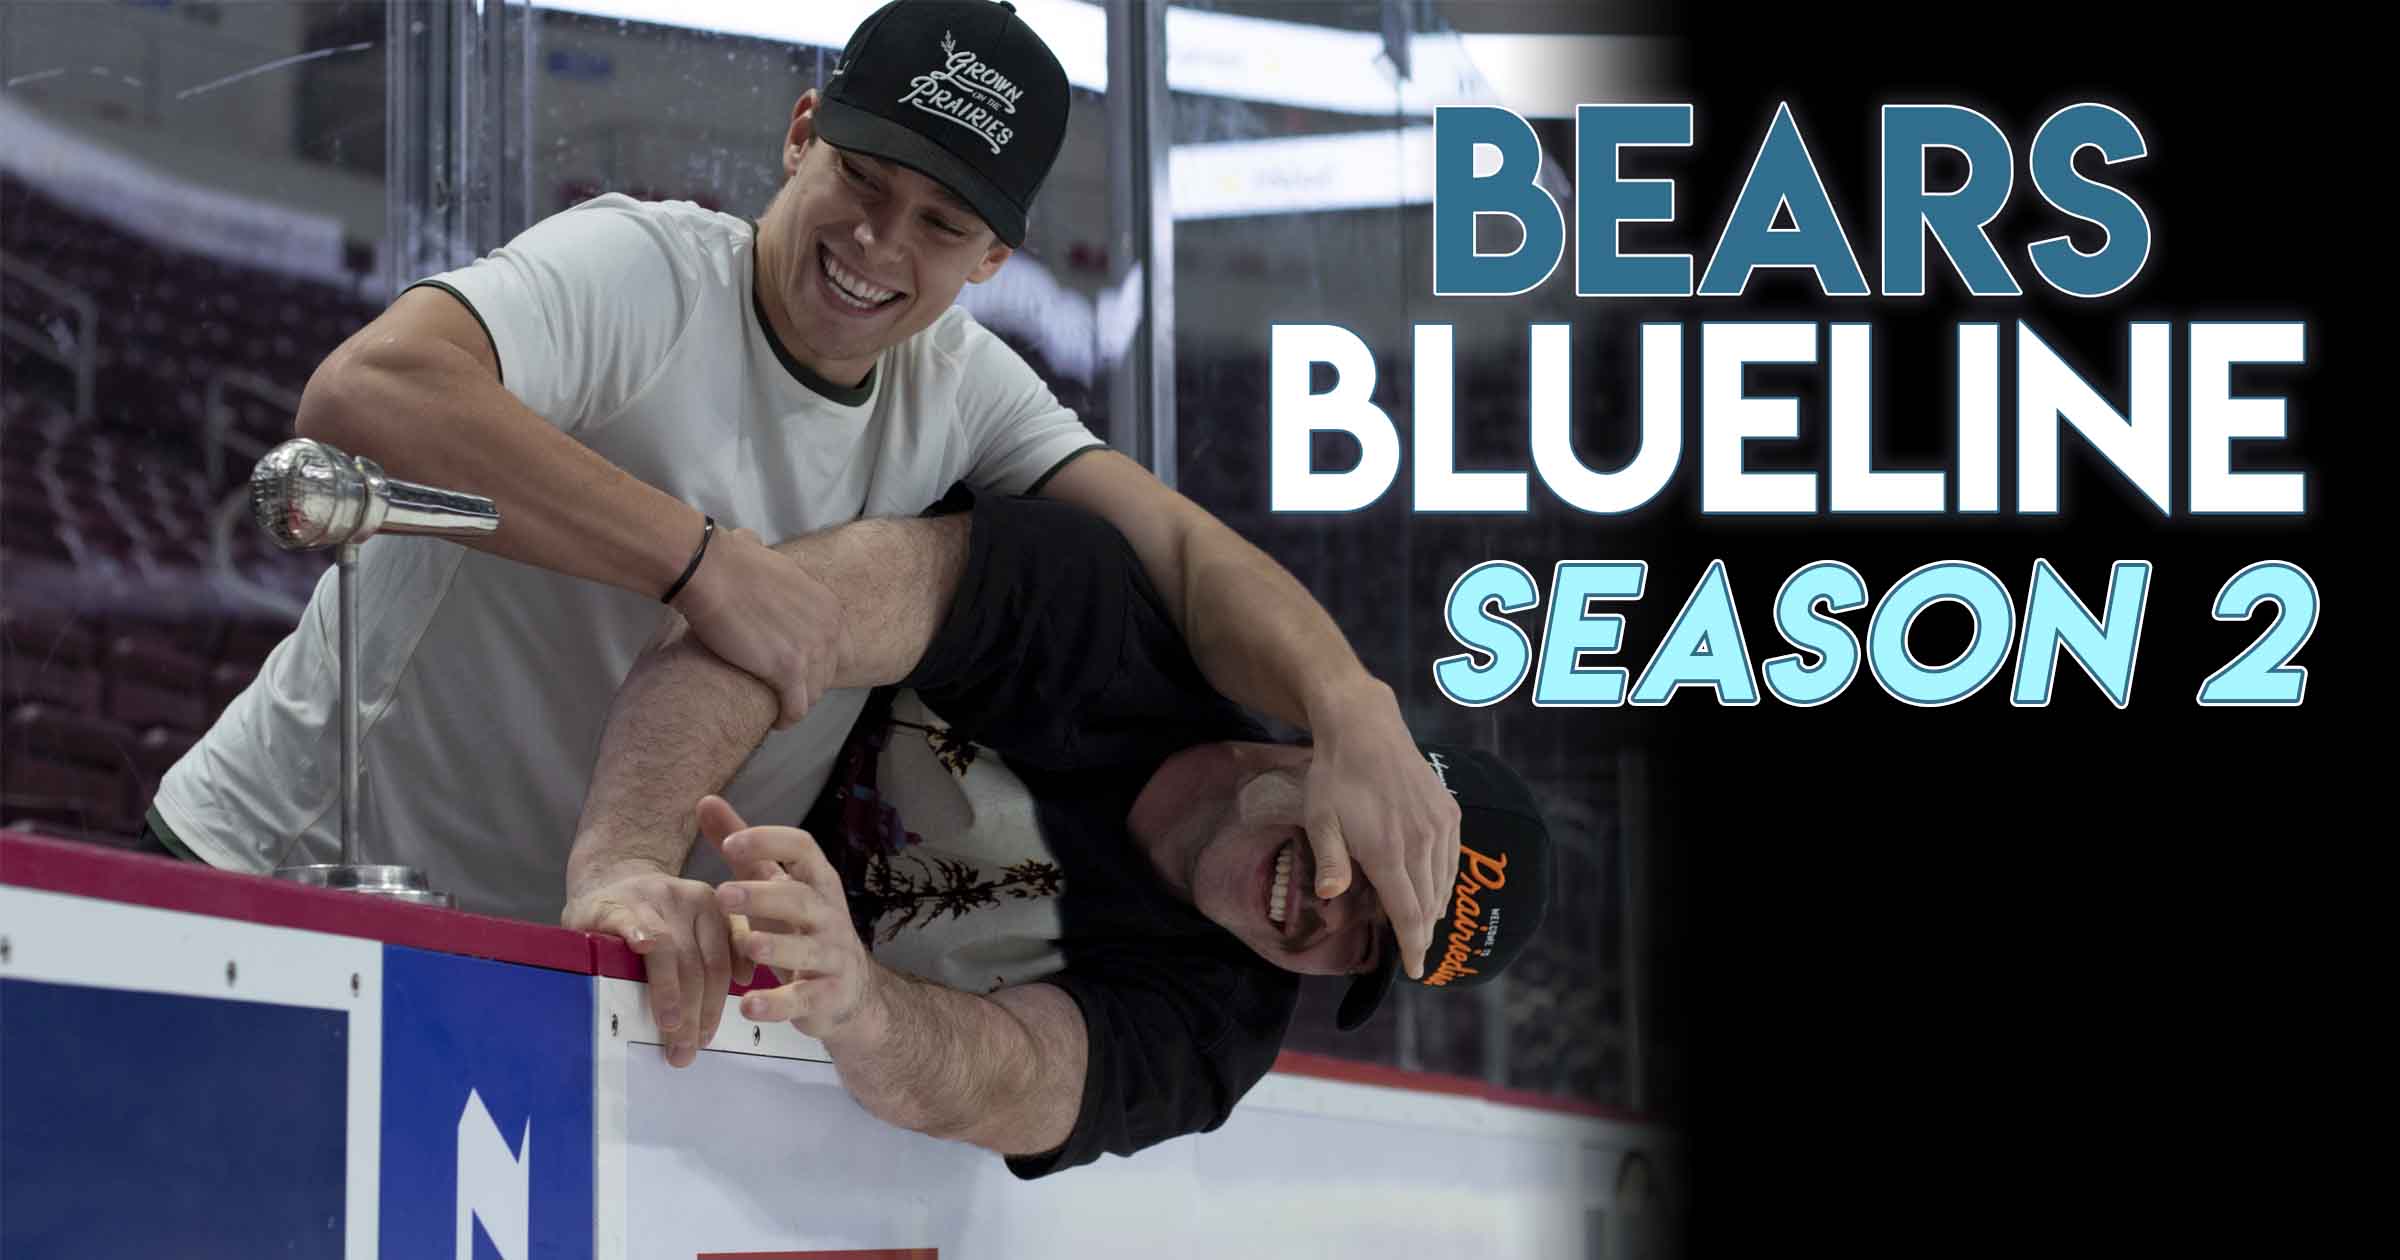 Bears Blueline Returns For Season 2